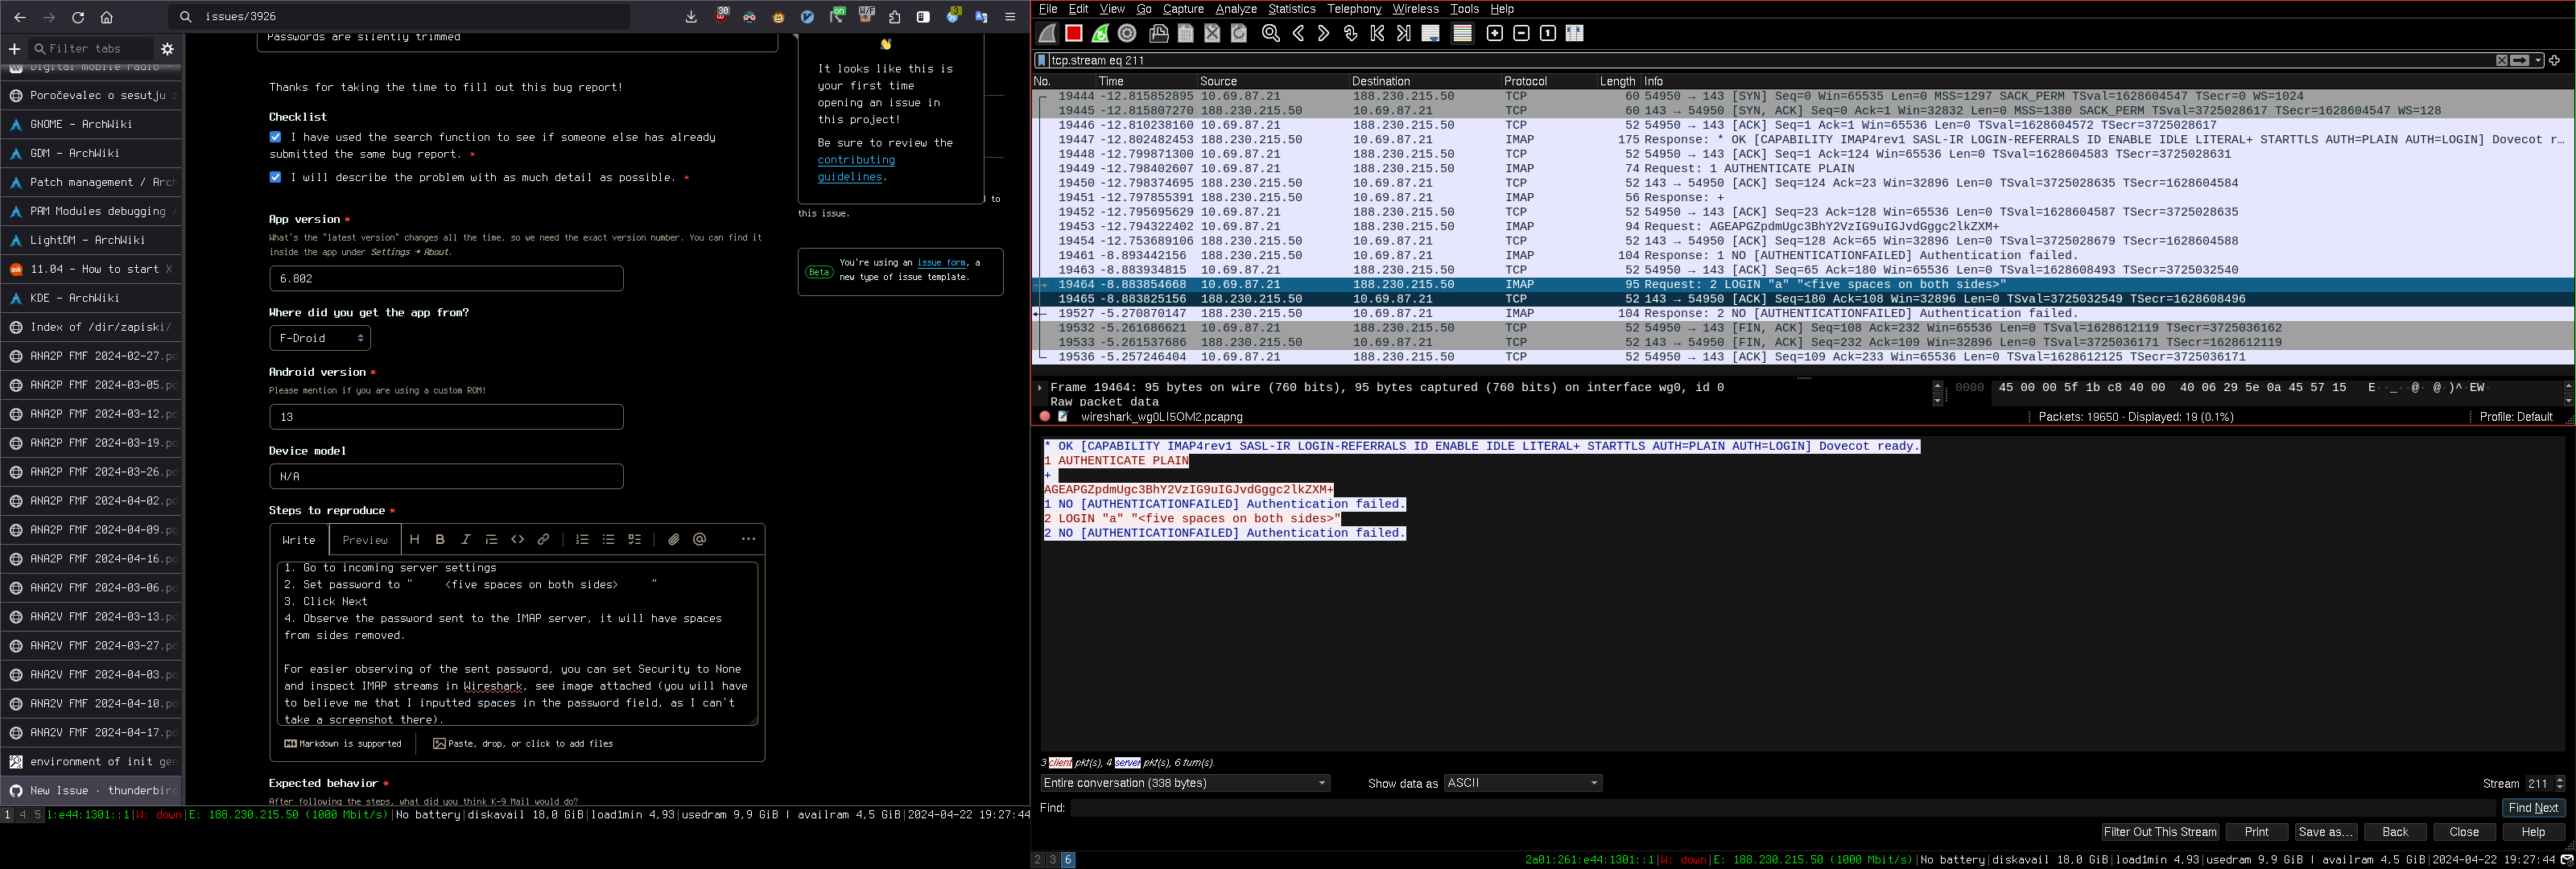 wireshark screenshot